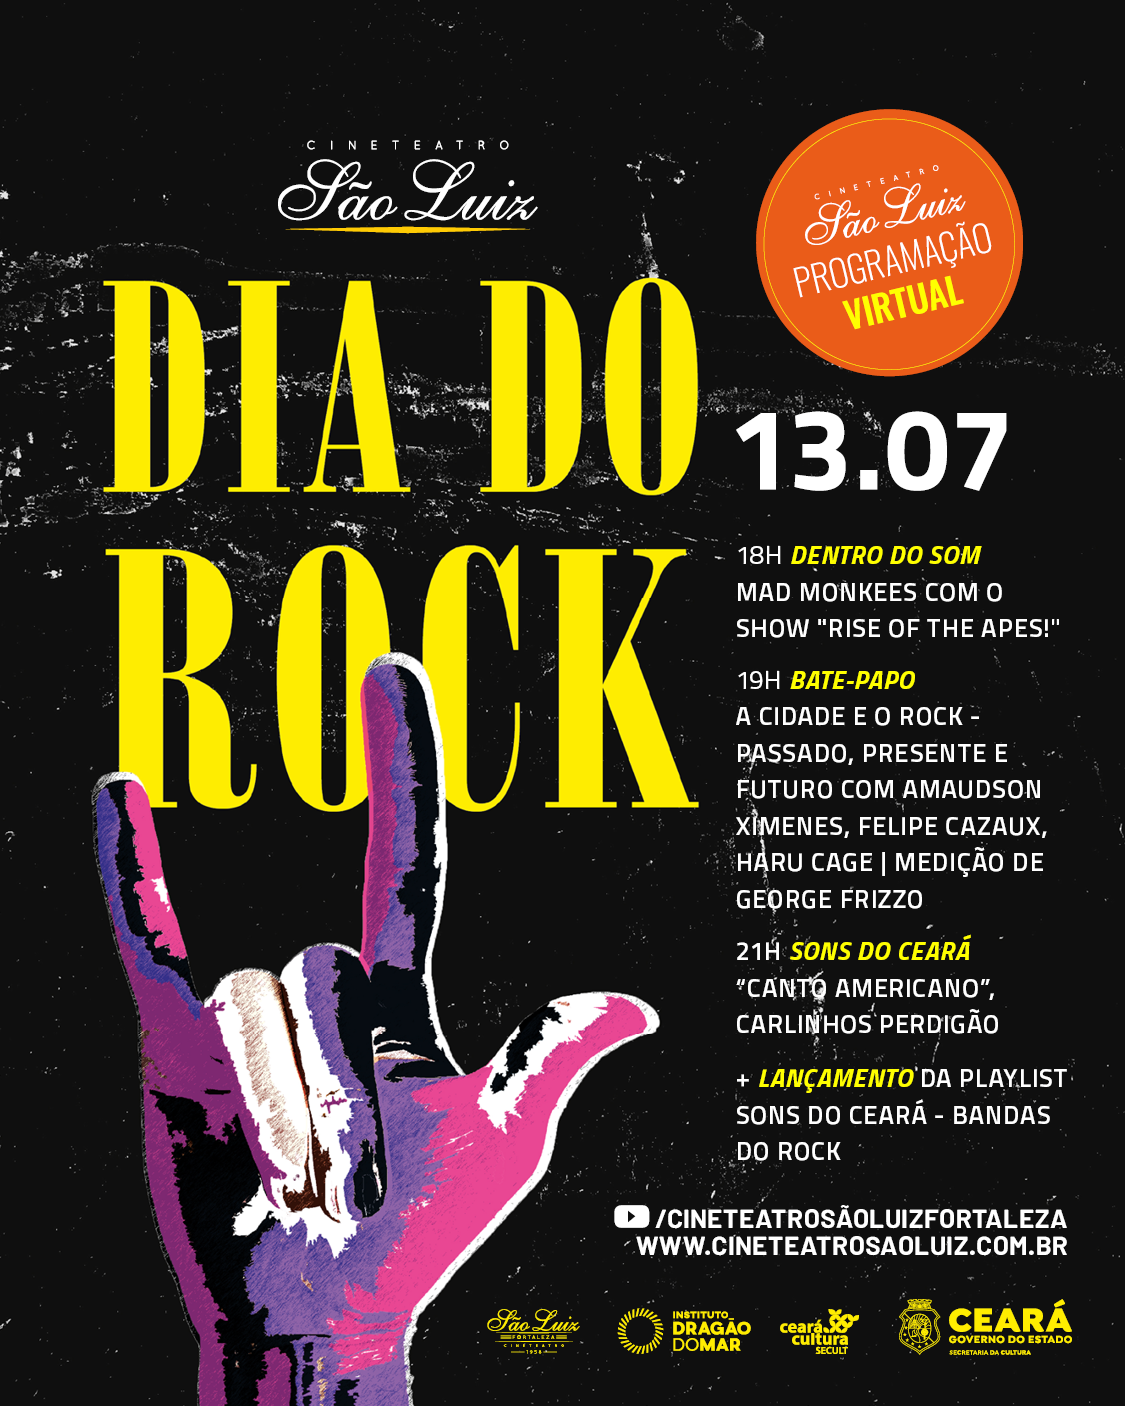 Cineteatro São Luiz celebra o Dia do Rock com show virtual da